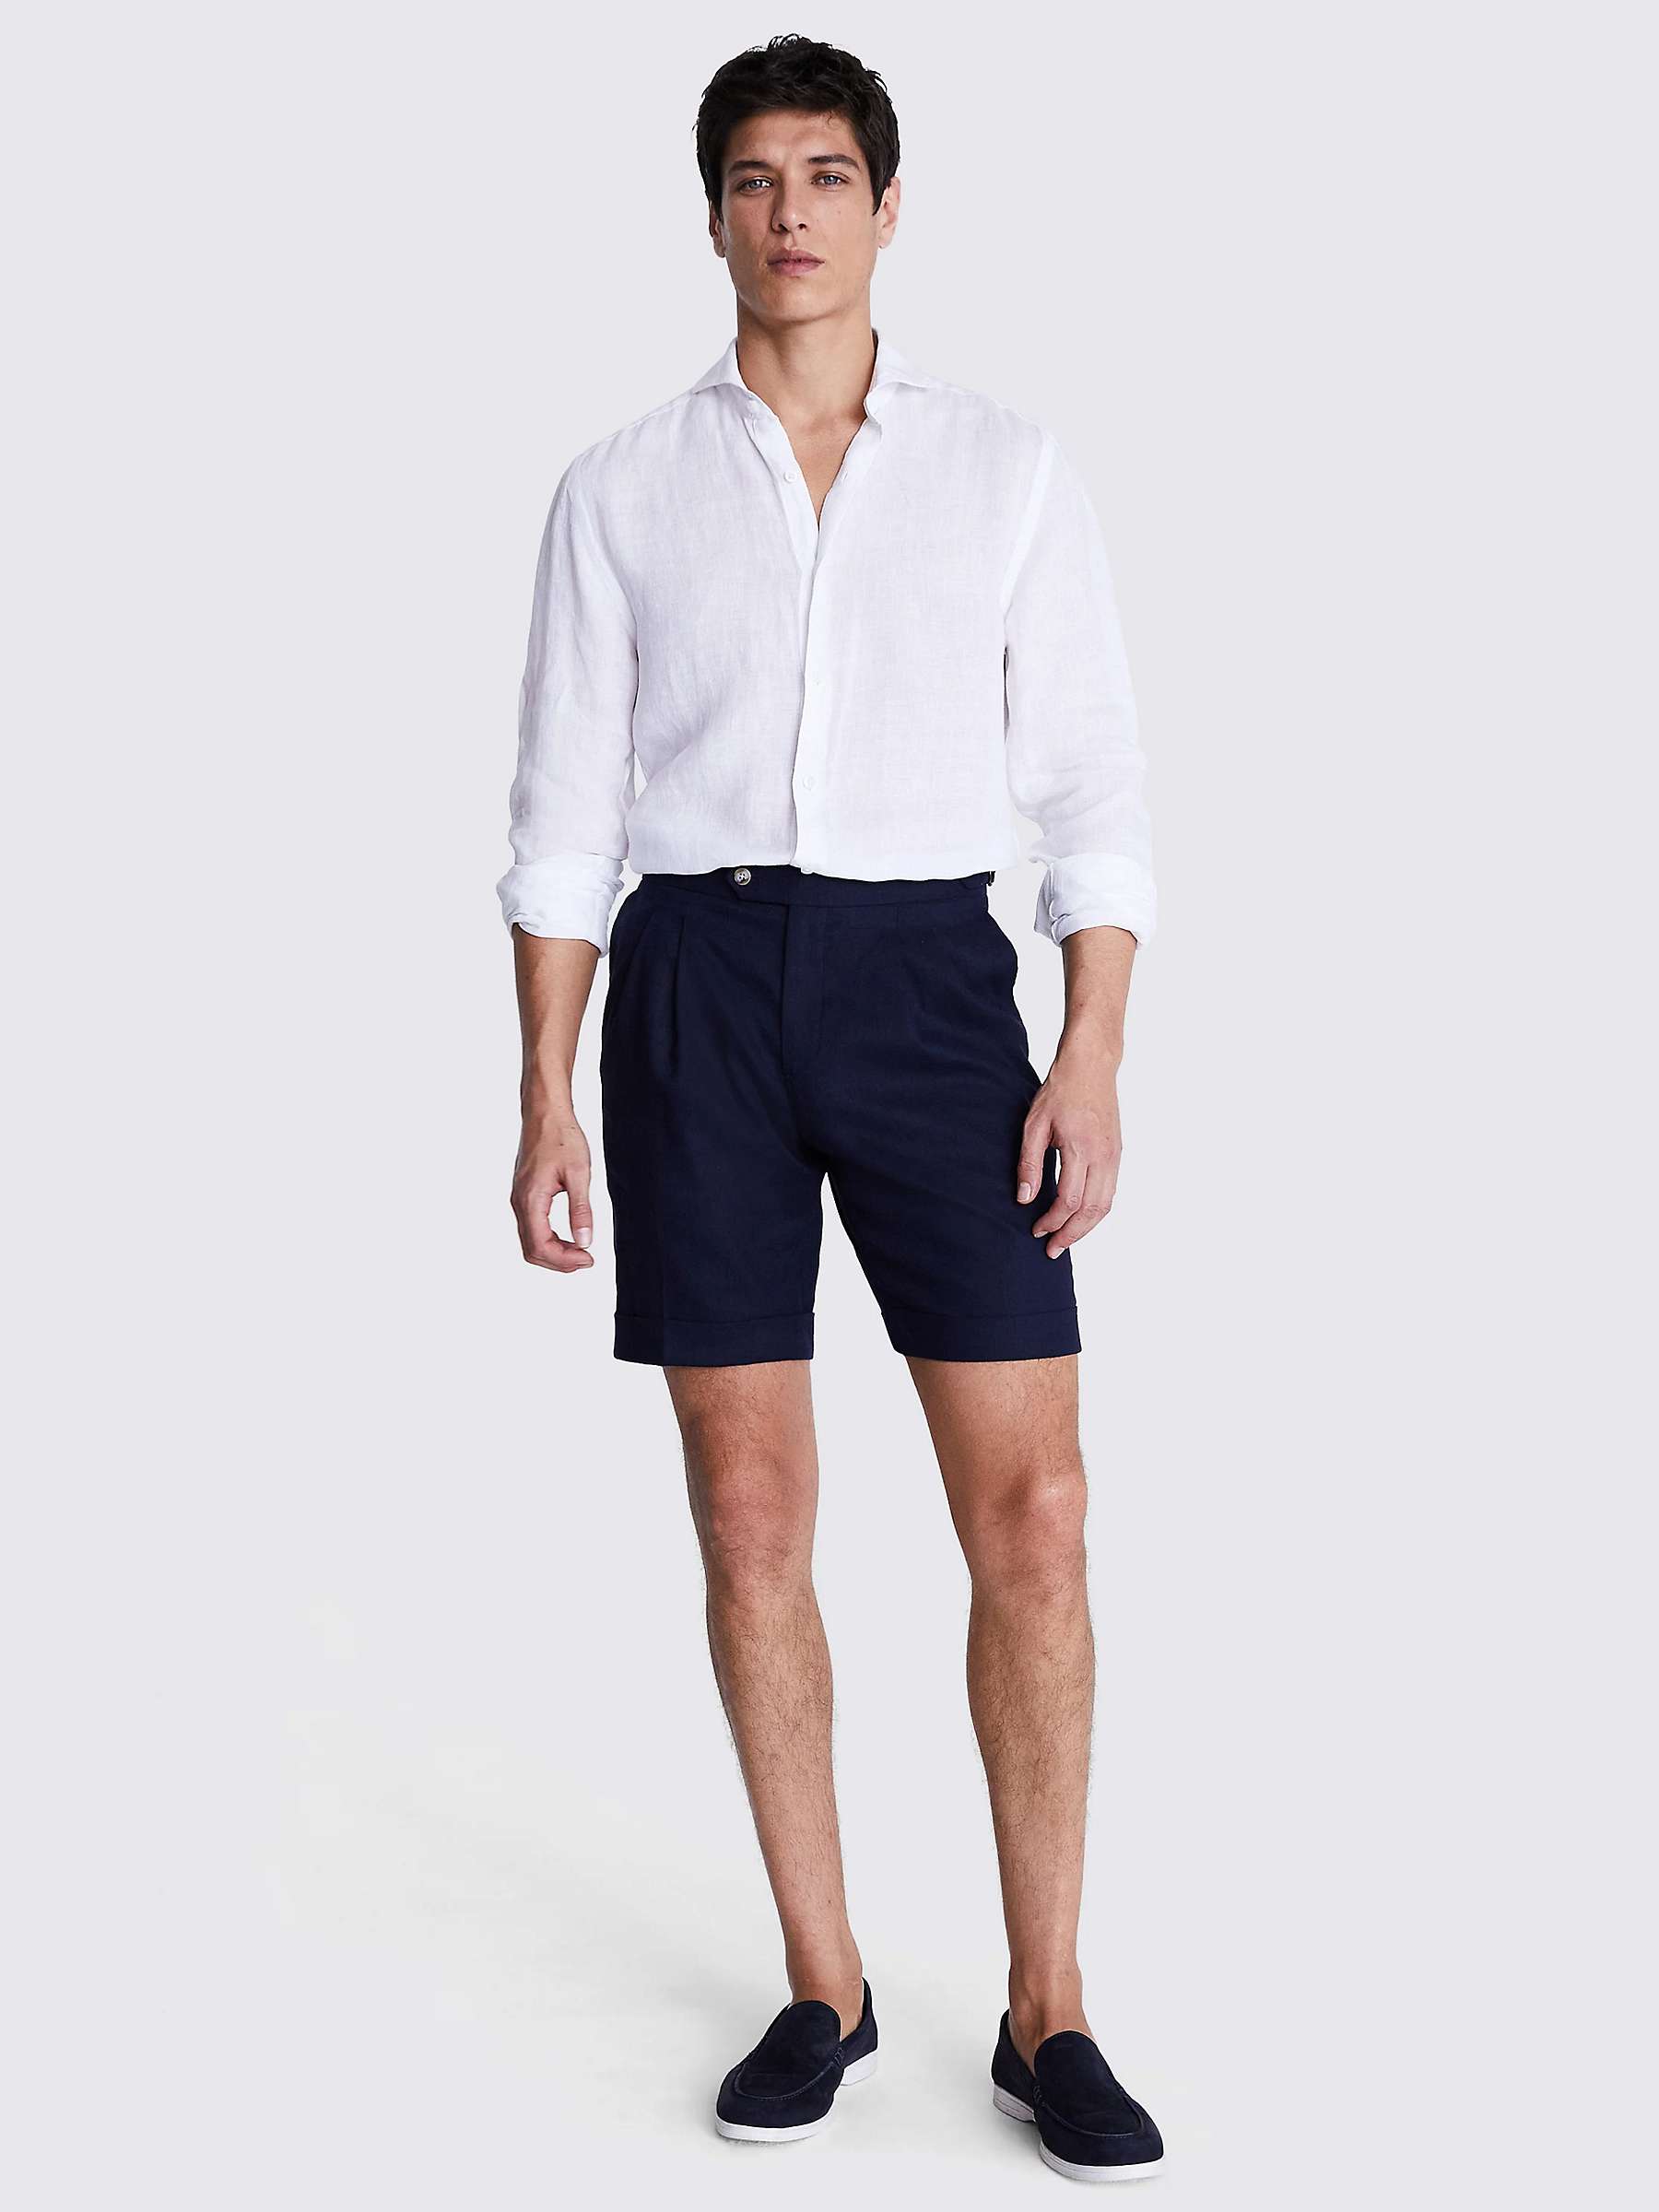 Buy Moss Matte Linen Blend Side Adjustable Shorts, Navy Online at johnlewis.com